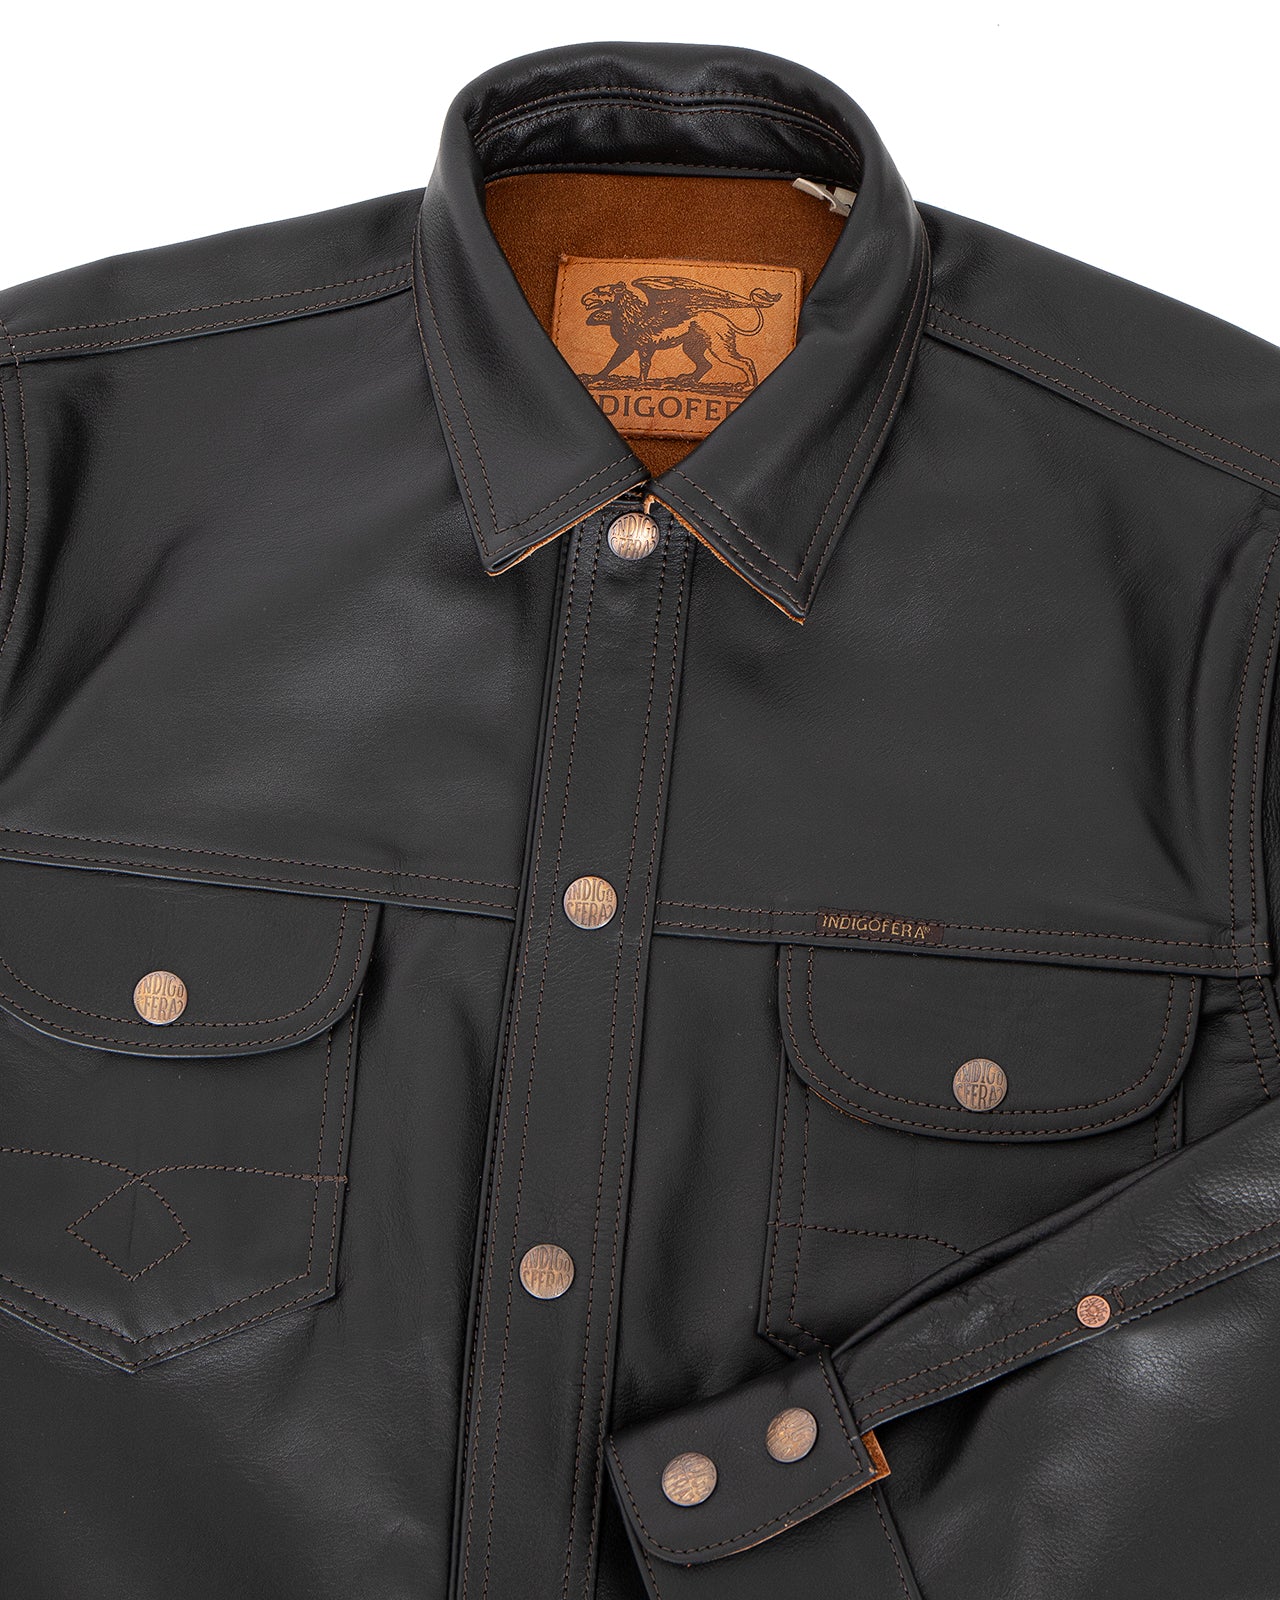 Indigofera Copeland Shirt, Black Leather, Teacore